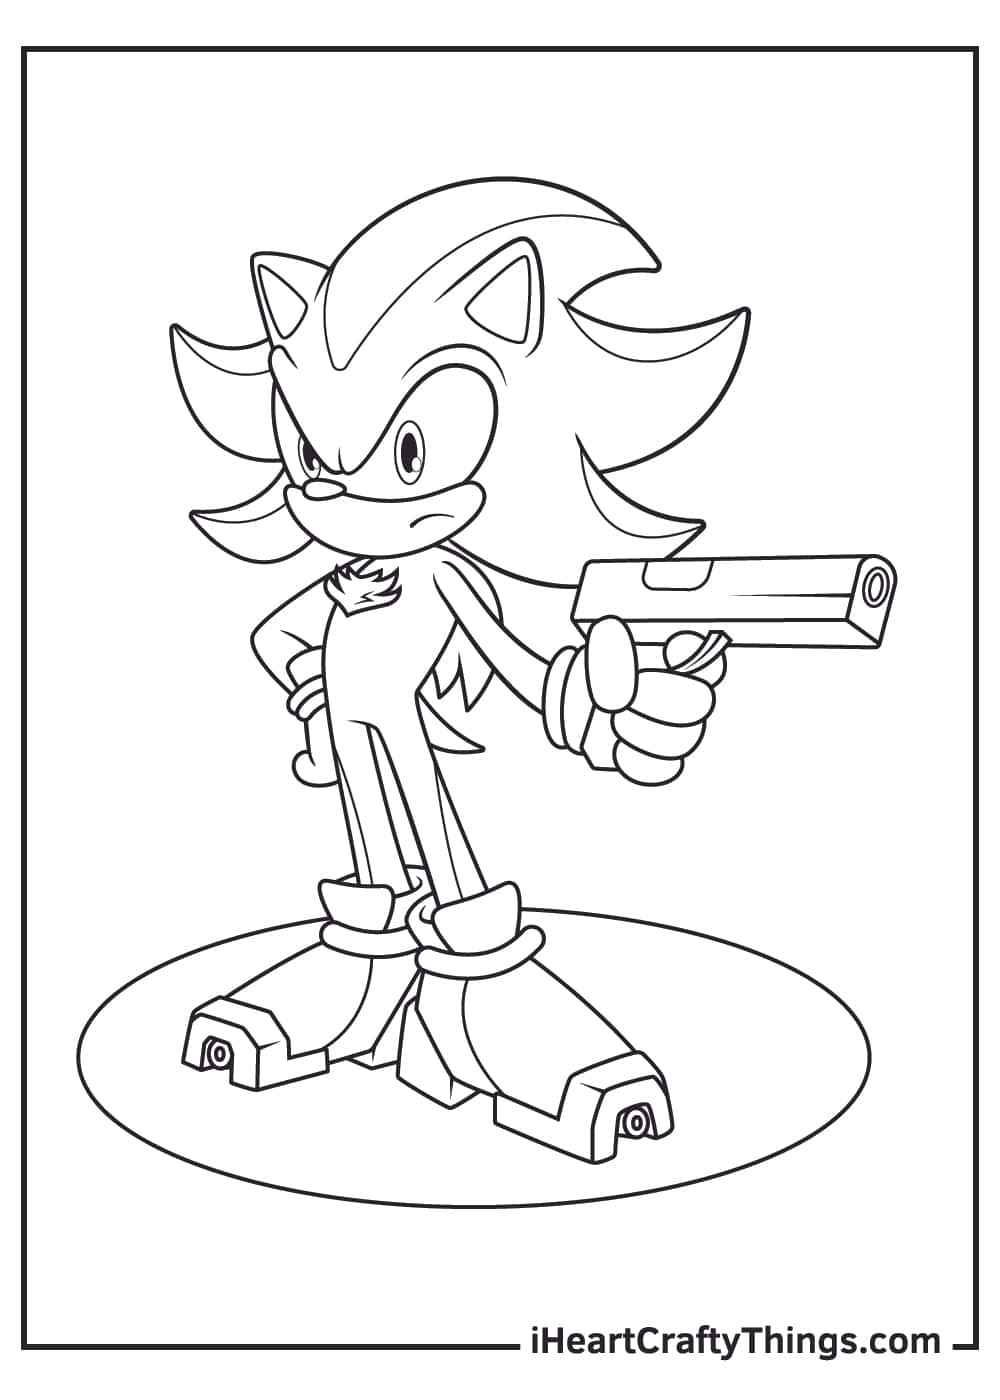 Imagende Sonic Coloreando A Shadow Con Una Pistola.